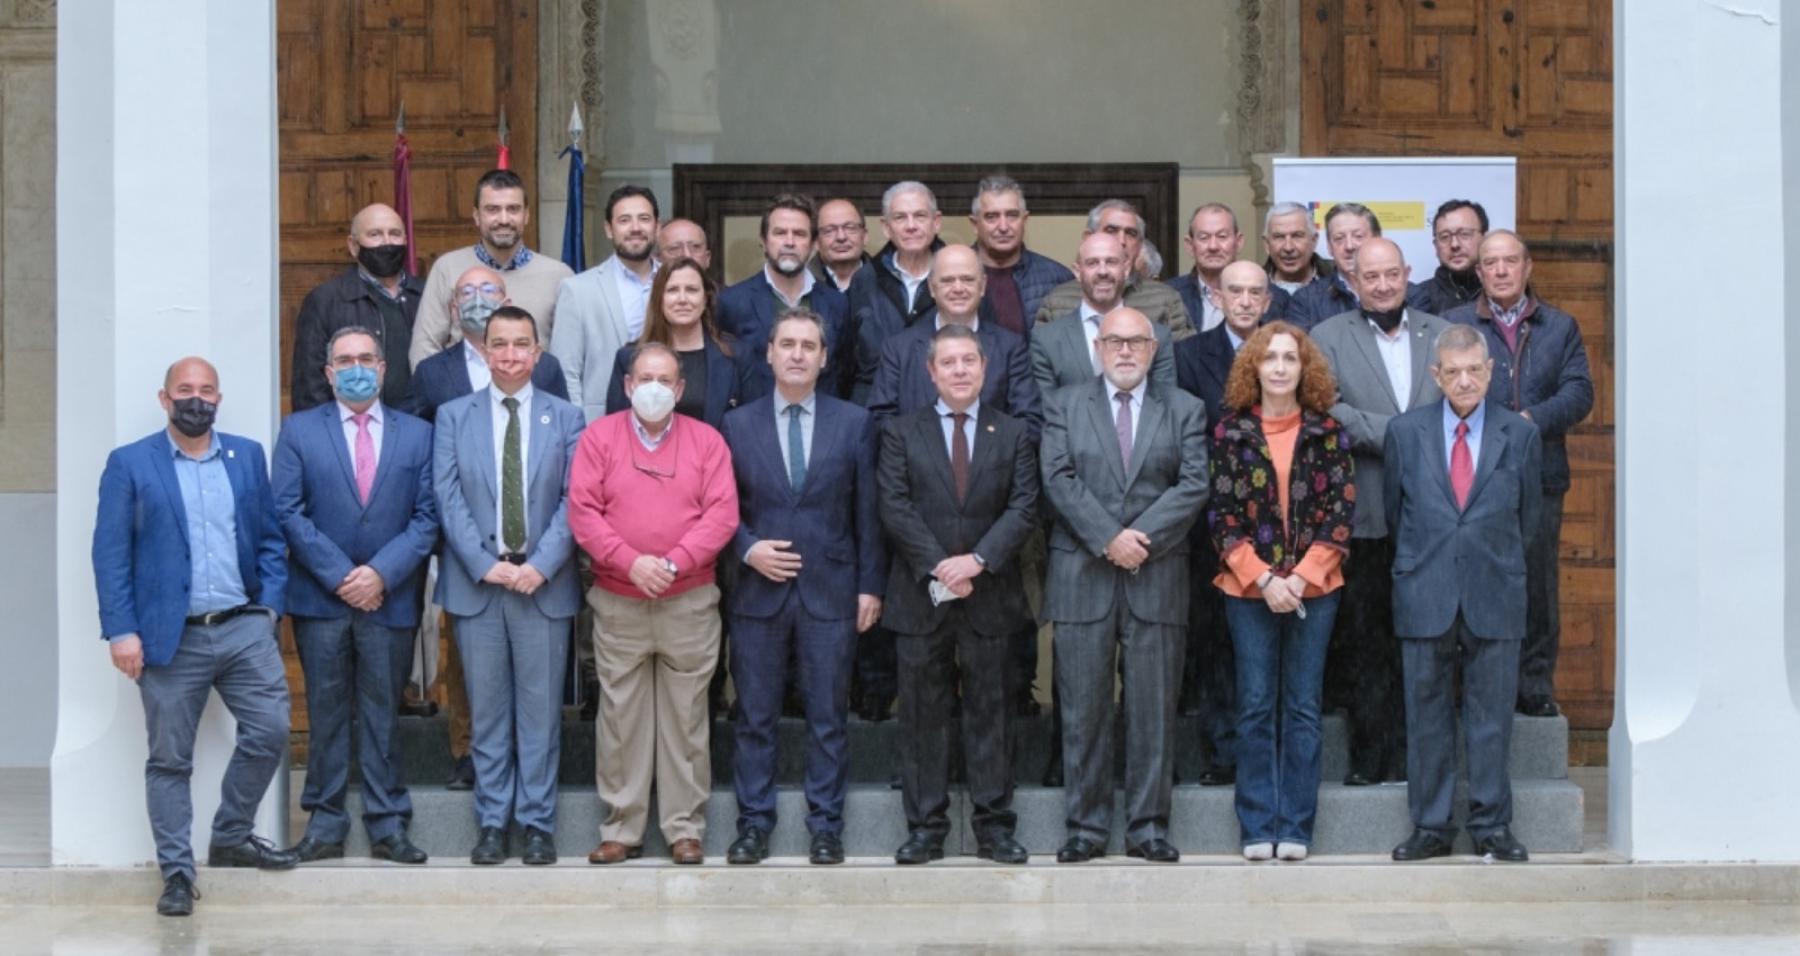 El Ministerio de Agricultura, Pesca y Alimentación destina 23,72 millones de euros del Plan de Recuperación Fase I a modernizar regadíos en Castilla-La Mancha